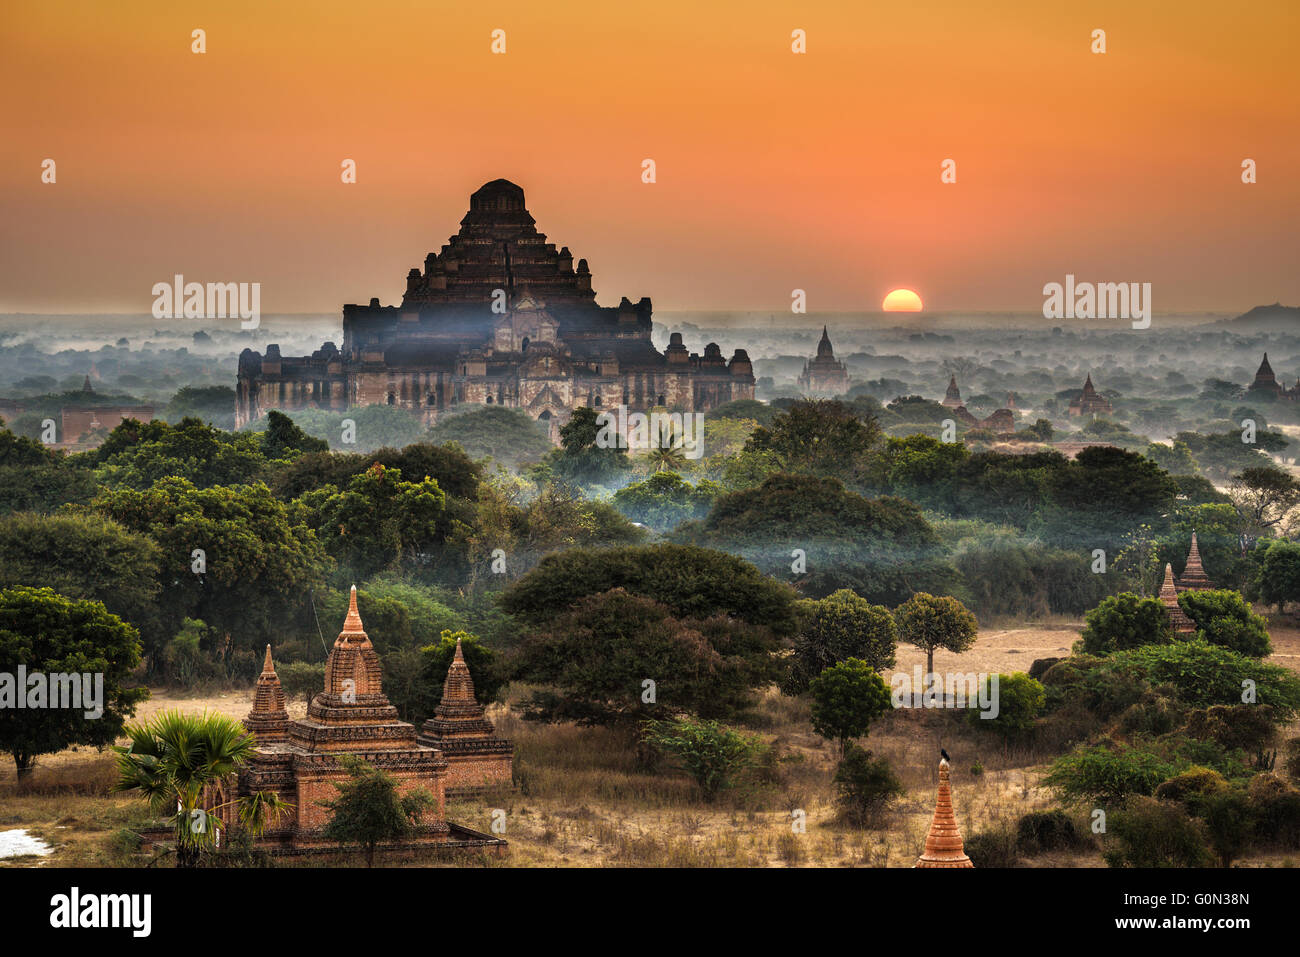 Scenic sunrise sopra Bagan in Myanmar. Bagan è una città antica con migliaia di storici templi buddisti e gli stupa. Foto Stock